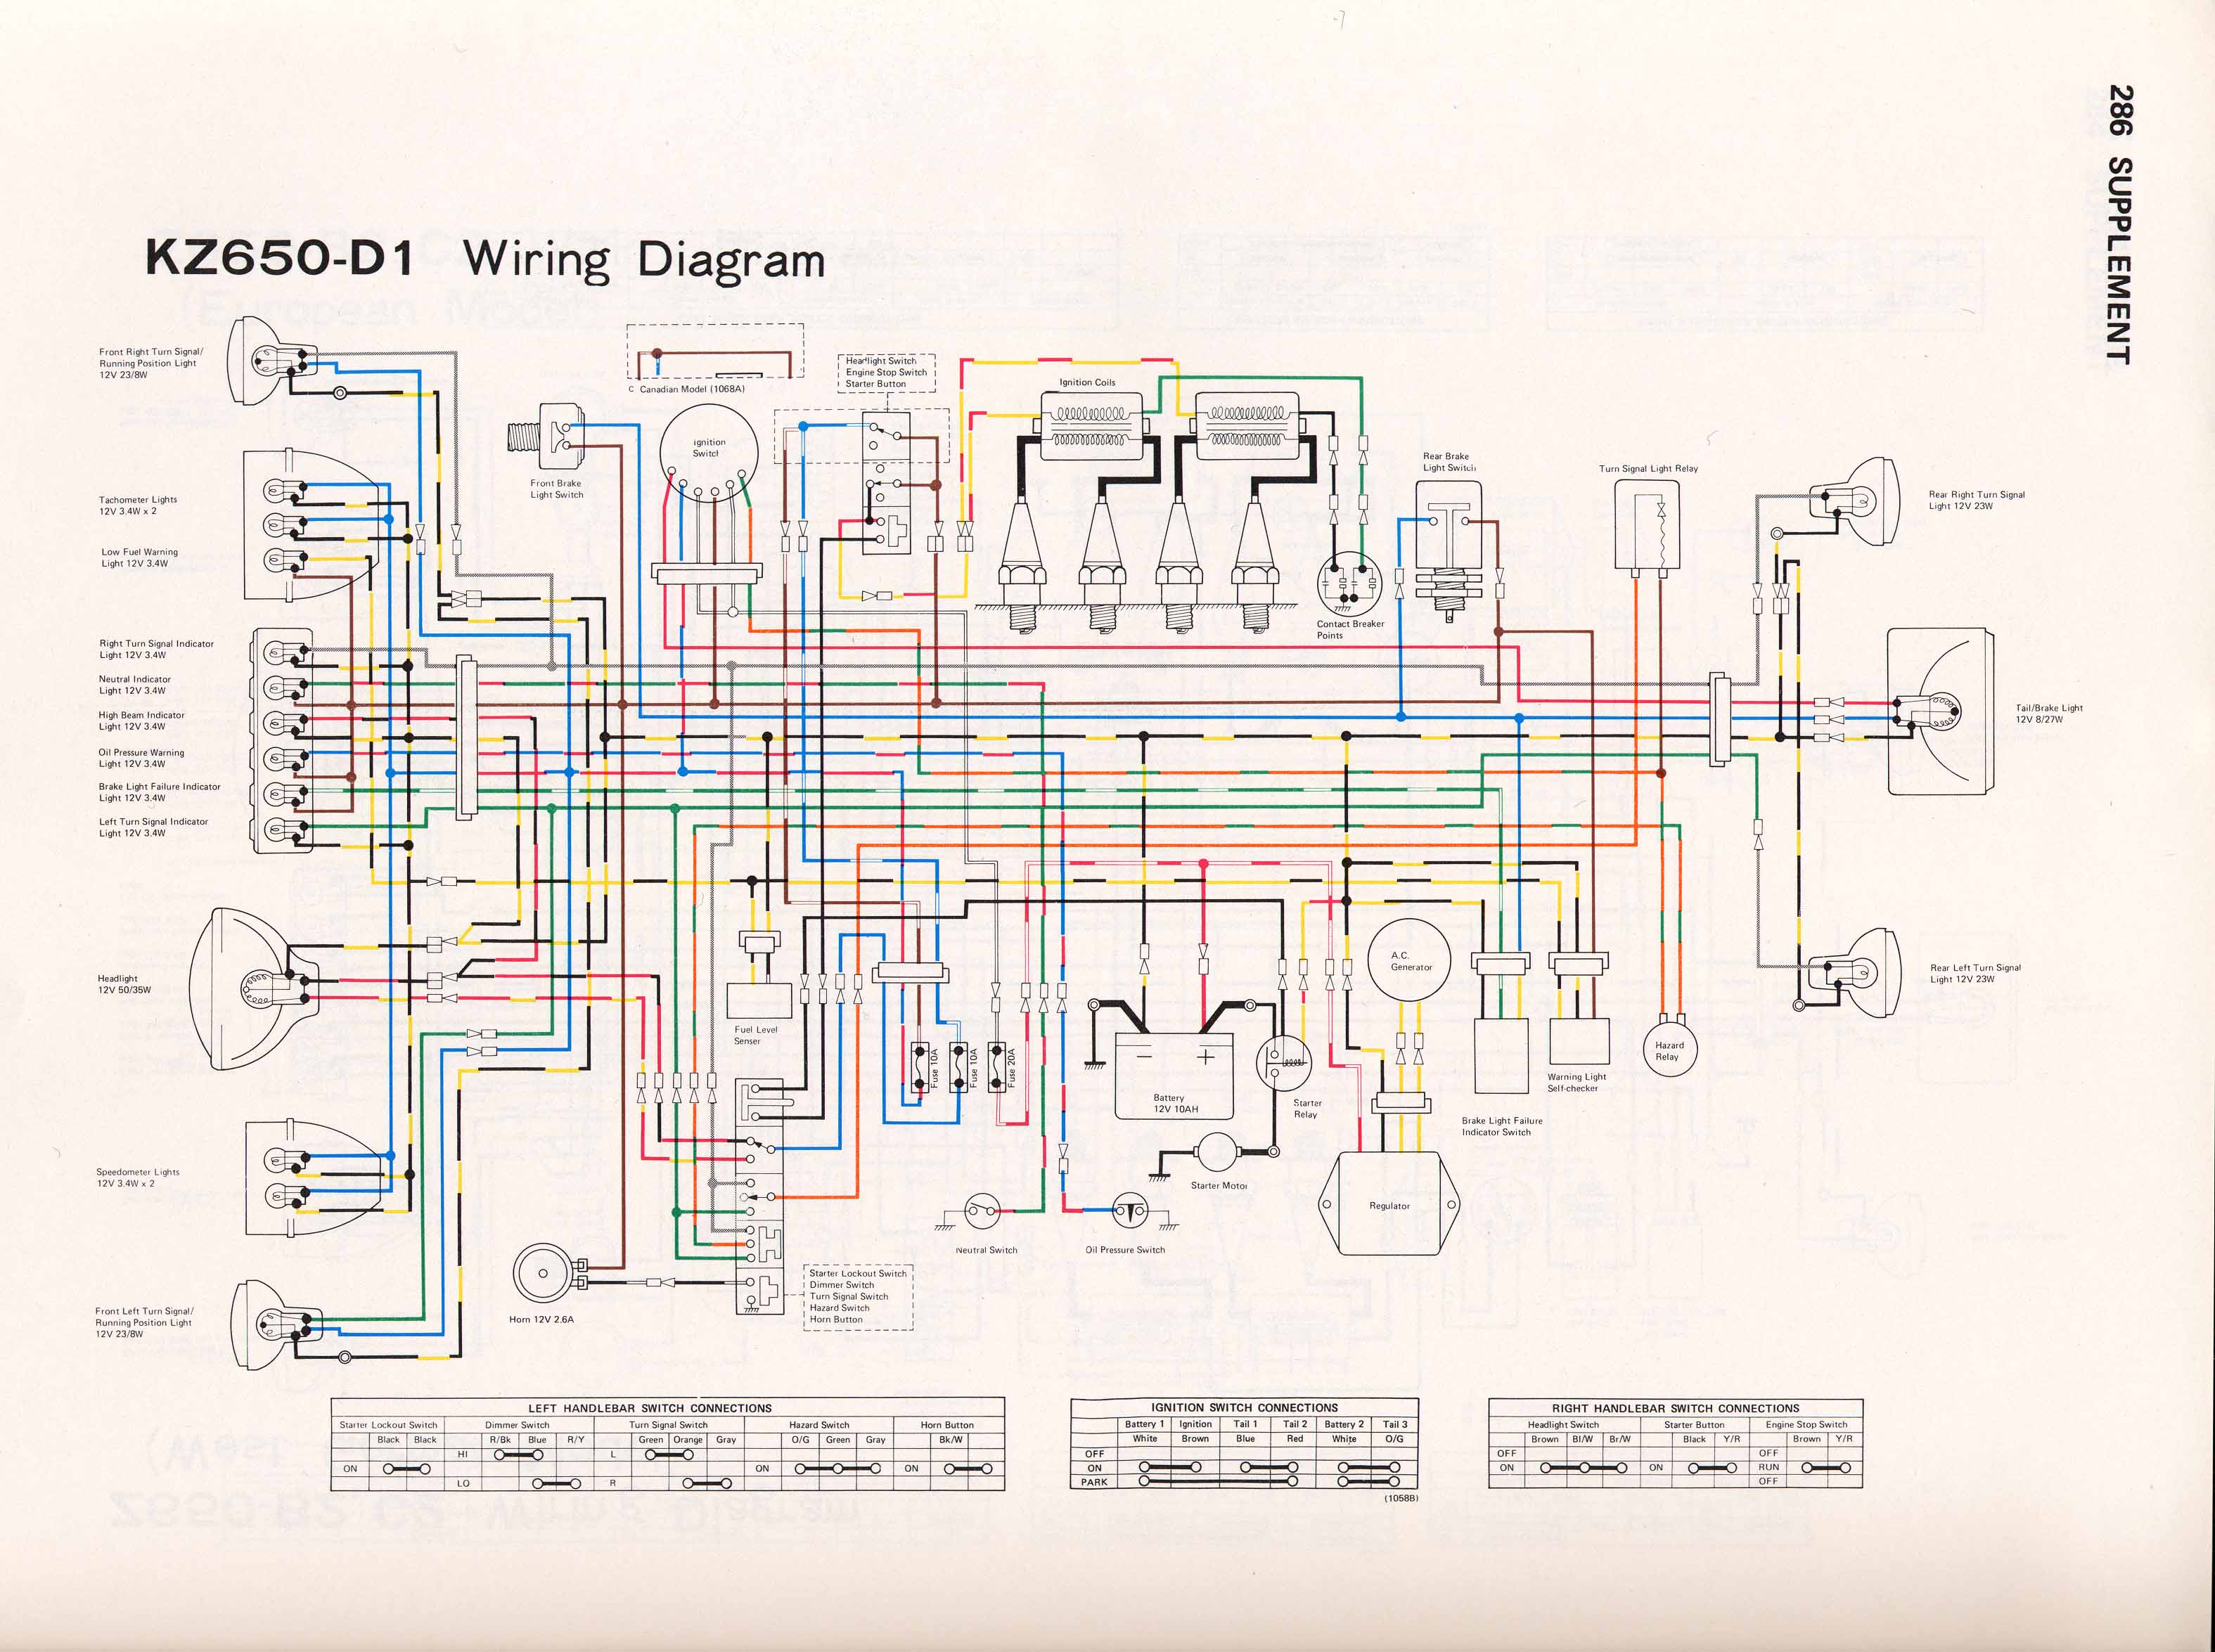 groen 010410 wiring diagram